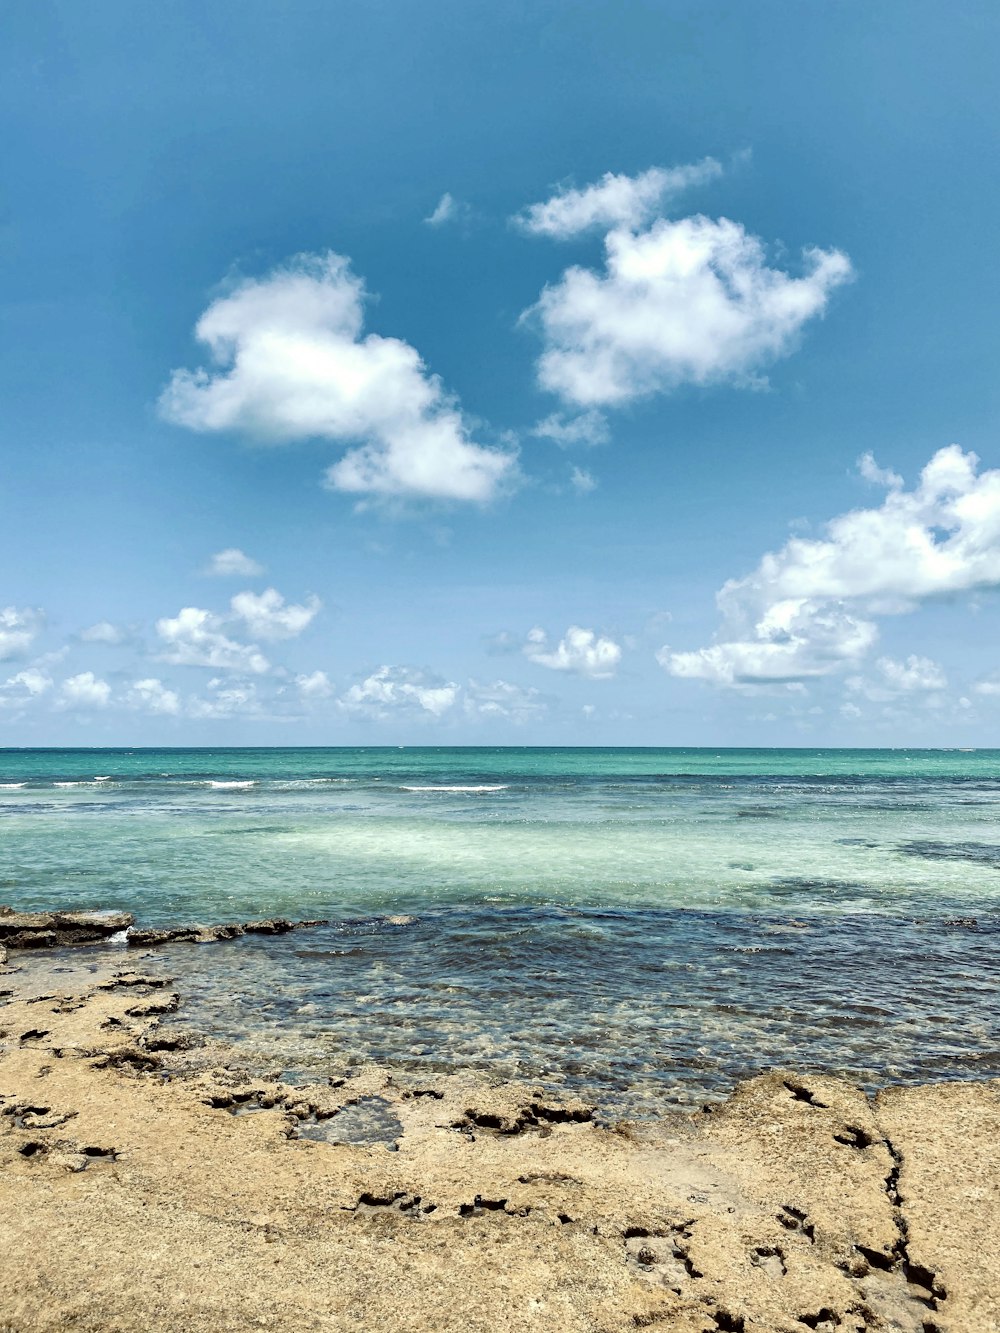 Hình ảnh bầu trời bãi biển miễn phí: Thưởng ngoạn những bức ảnh tuyệt đẹp về bầu trời và bãi biển hoàn toàn miễn phí trên mạng. Đã đến lúc bạn có thể tận hưởng được khoảnh khắc tươi sáng của bầu trời trong không khí biển cả.